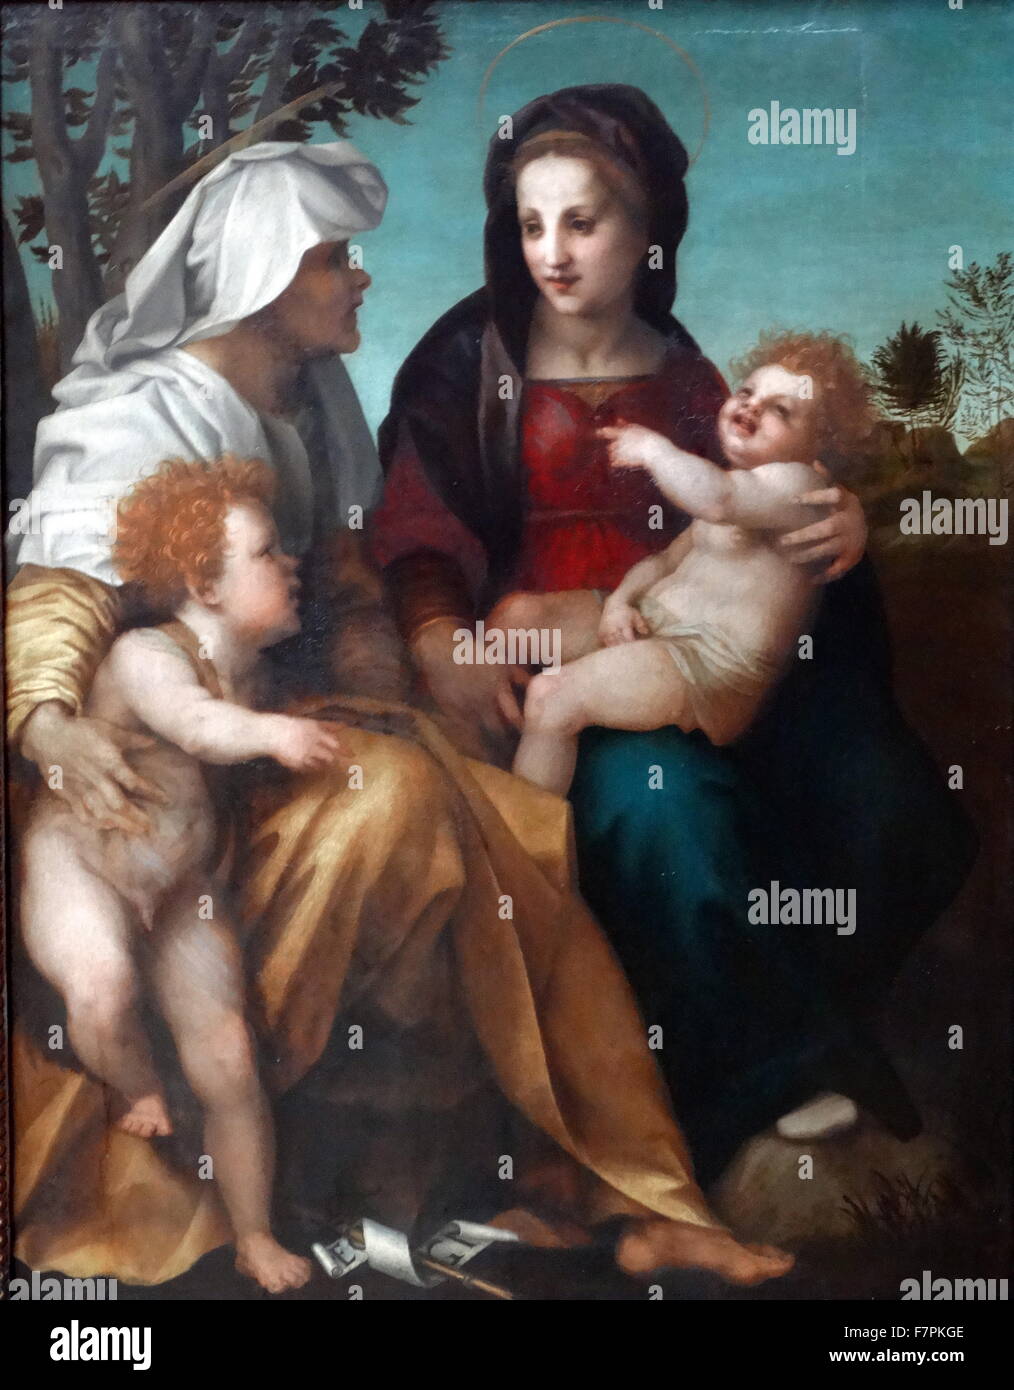 Gemälde mit dem Titel "Die Madonna und Kind, Saint Elizabeth und dem Täufer" von Andrea del Sarto (1486-1530) italienischer Maler von Florenz entfernt. Datiert aus dem 16. Jahrhundert Stockfoto